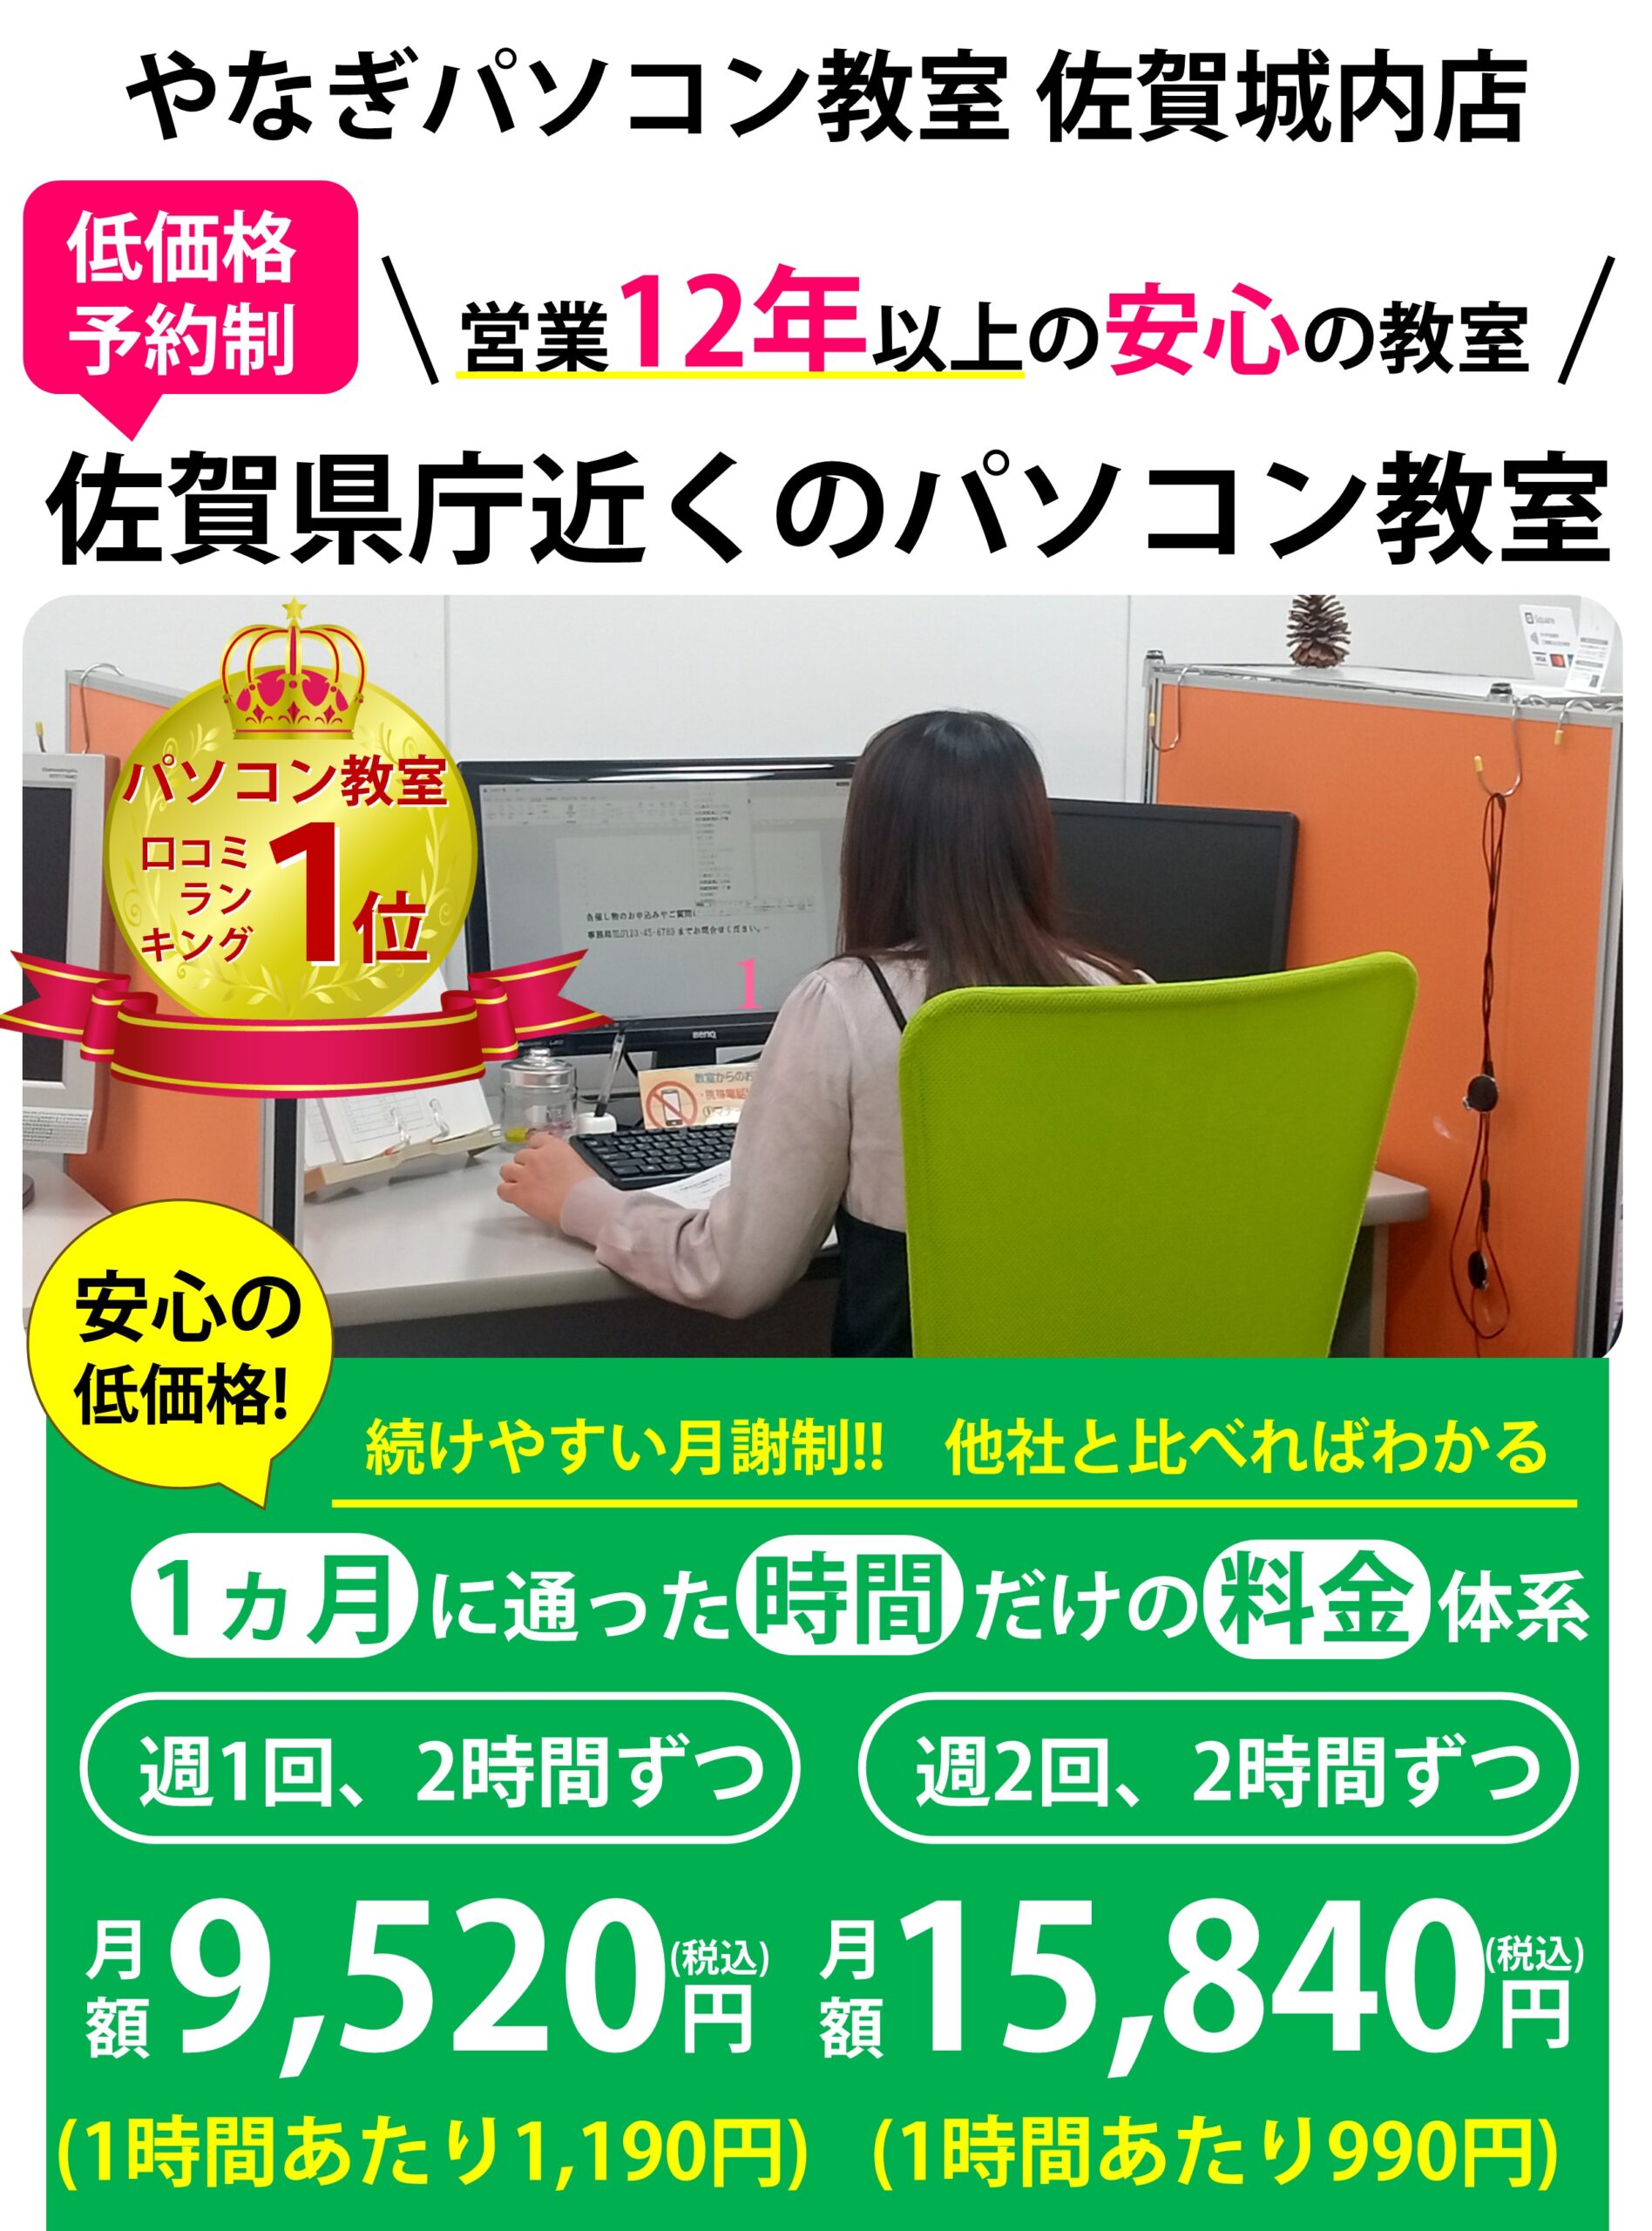 佐賀県庁近くのパソコン教室